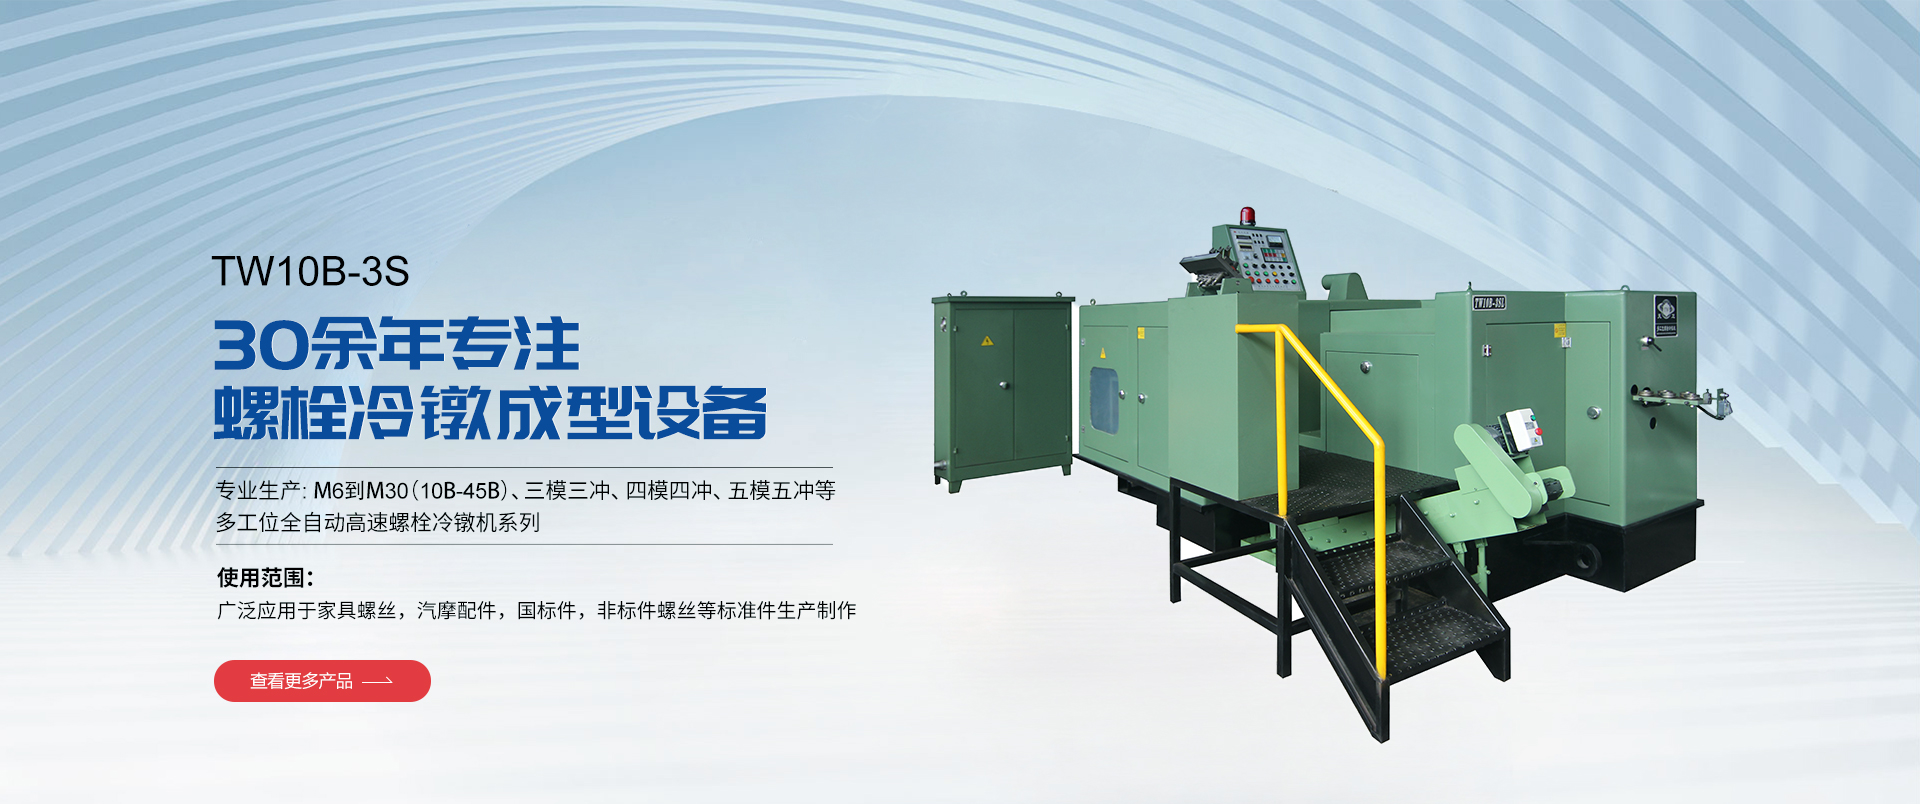 Pingyang Tianwei Machinery Co., Ltd